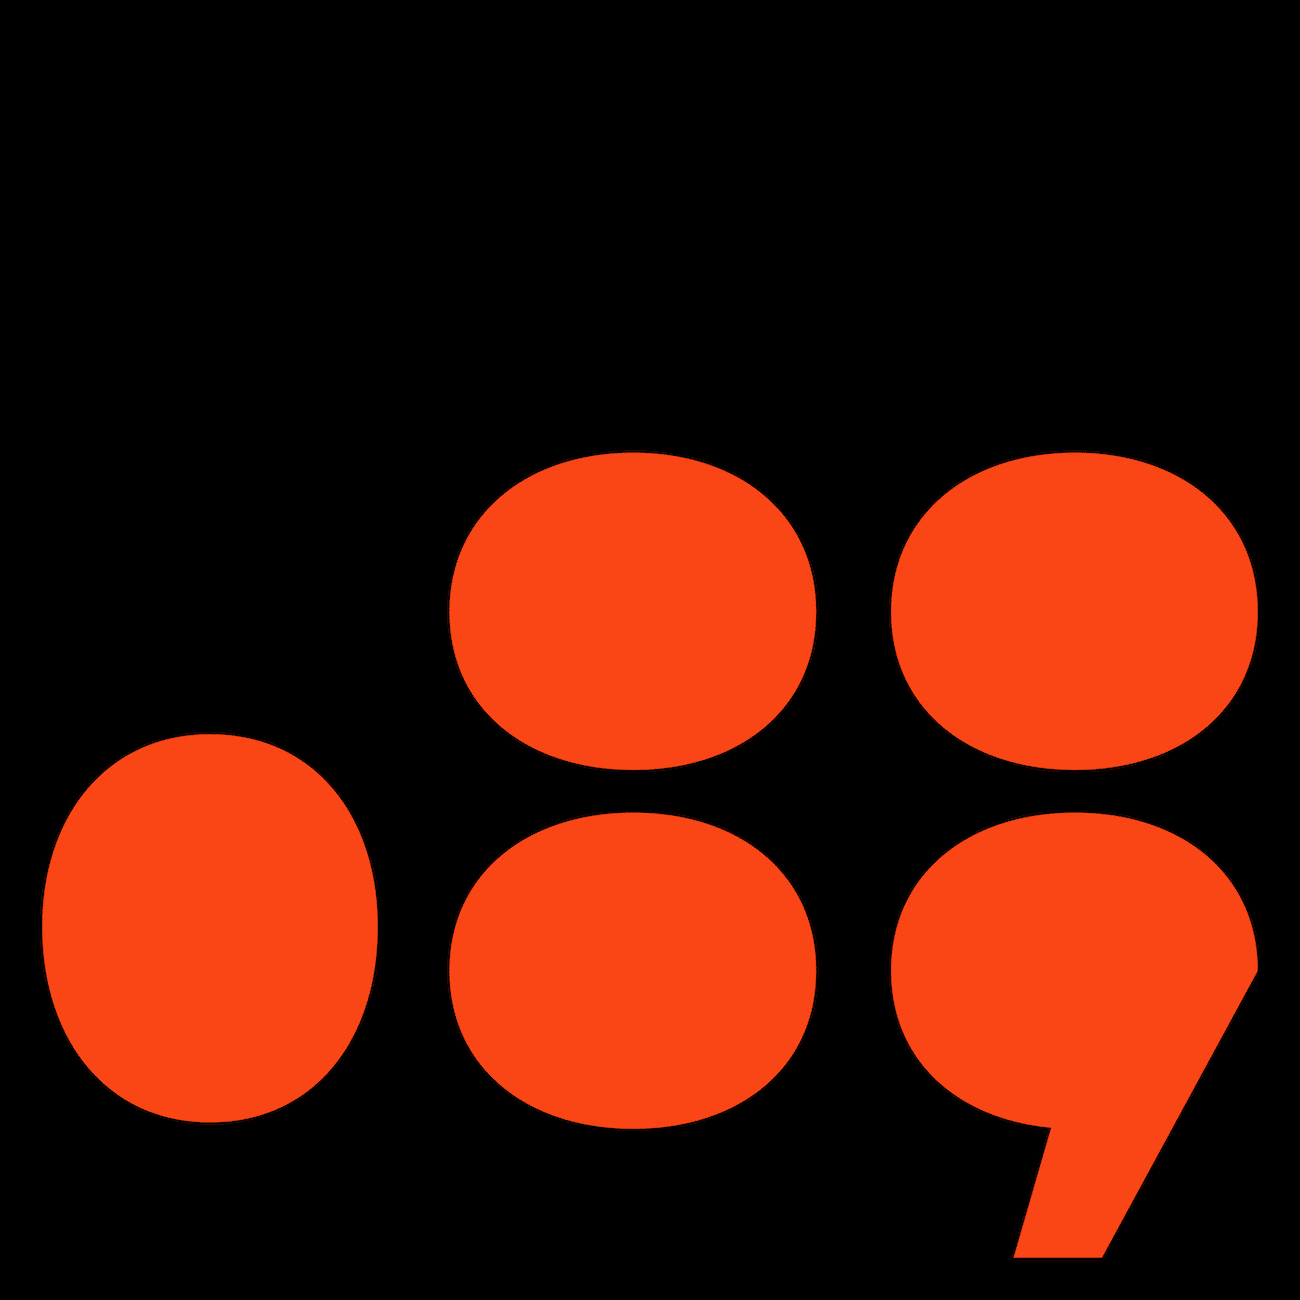 Punkt- und Komma-Glyphen rot auf schwarz, Branding_Custom-Font_Schriftdesign_Galipette_Kobra-Agency